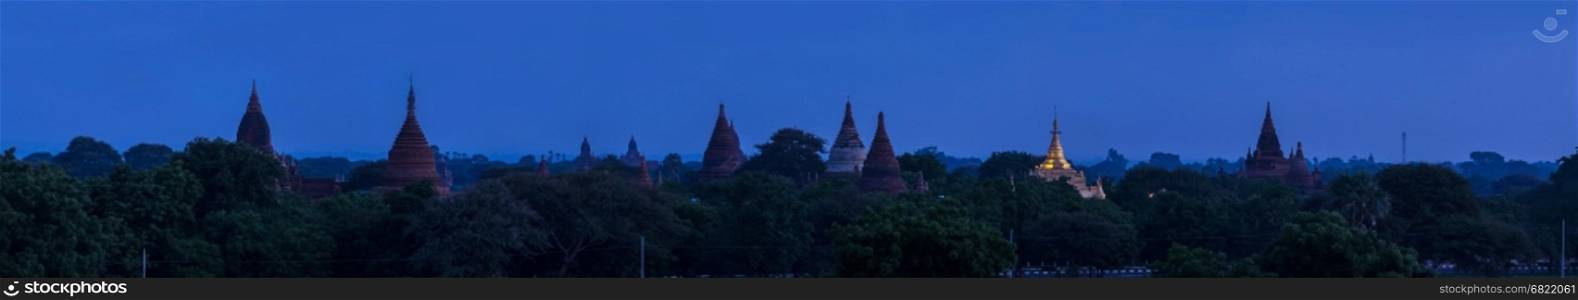 Panorama temples in Bagan, Myanmar